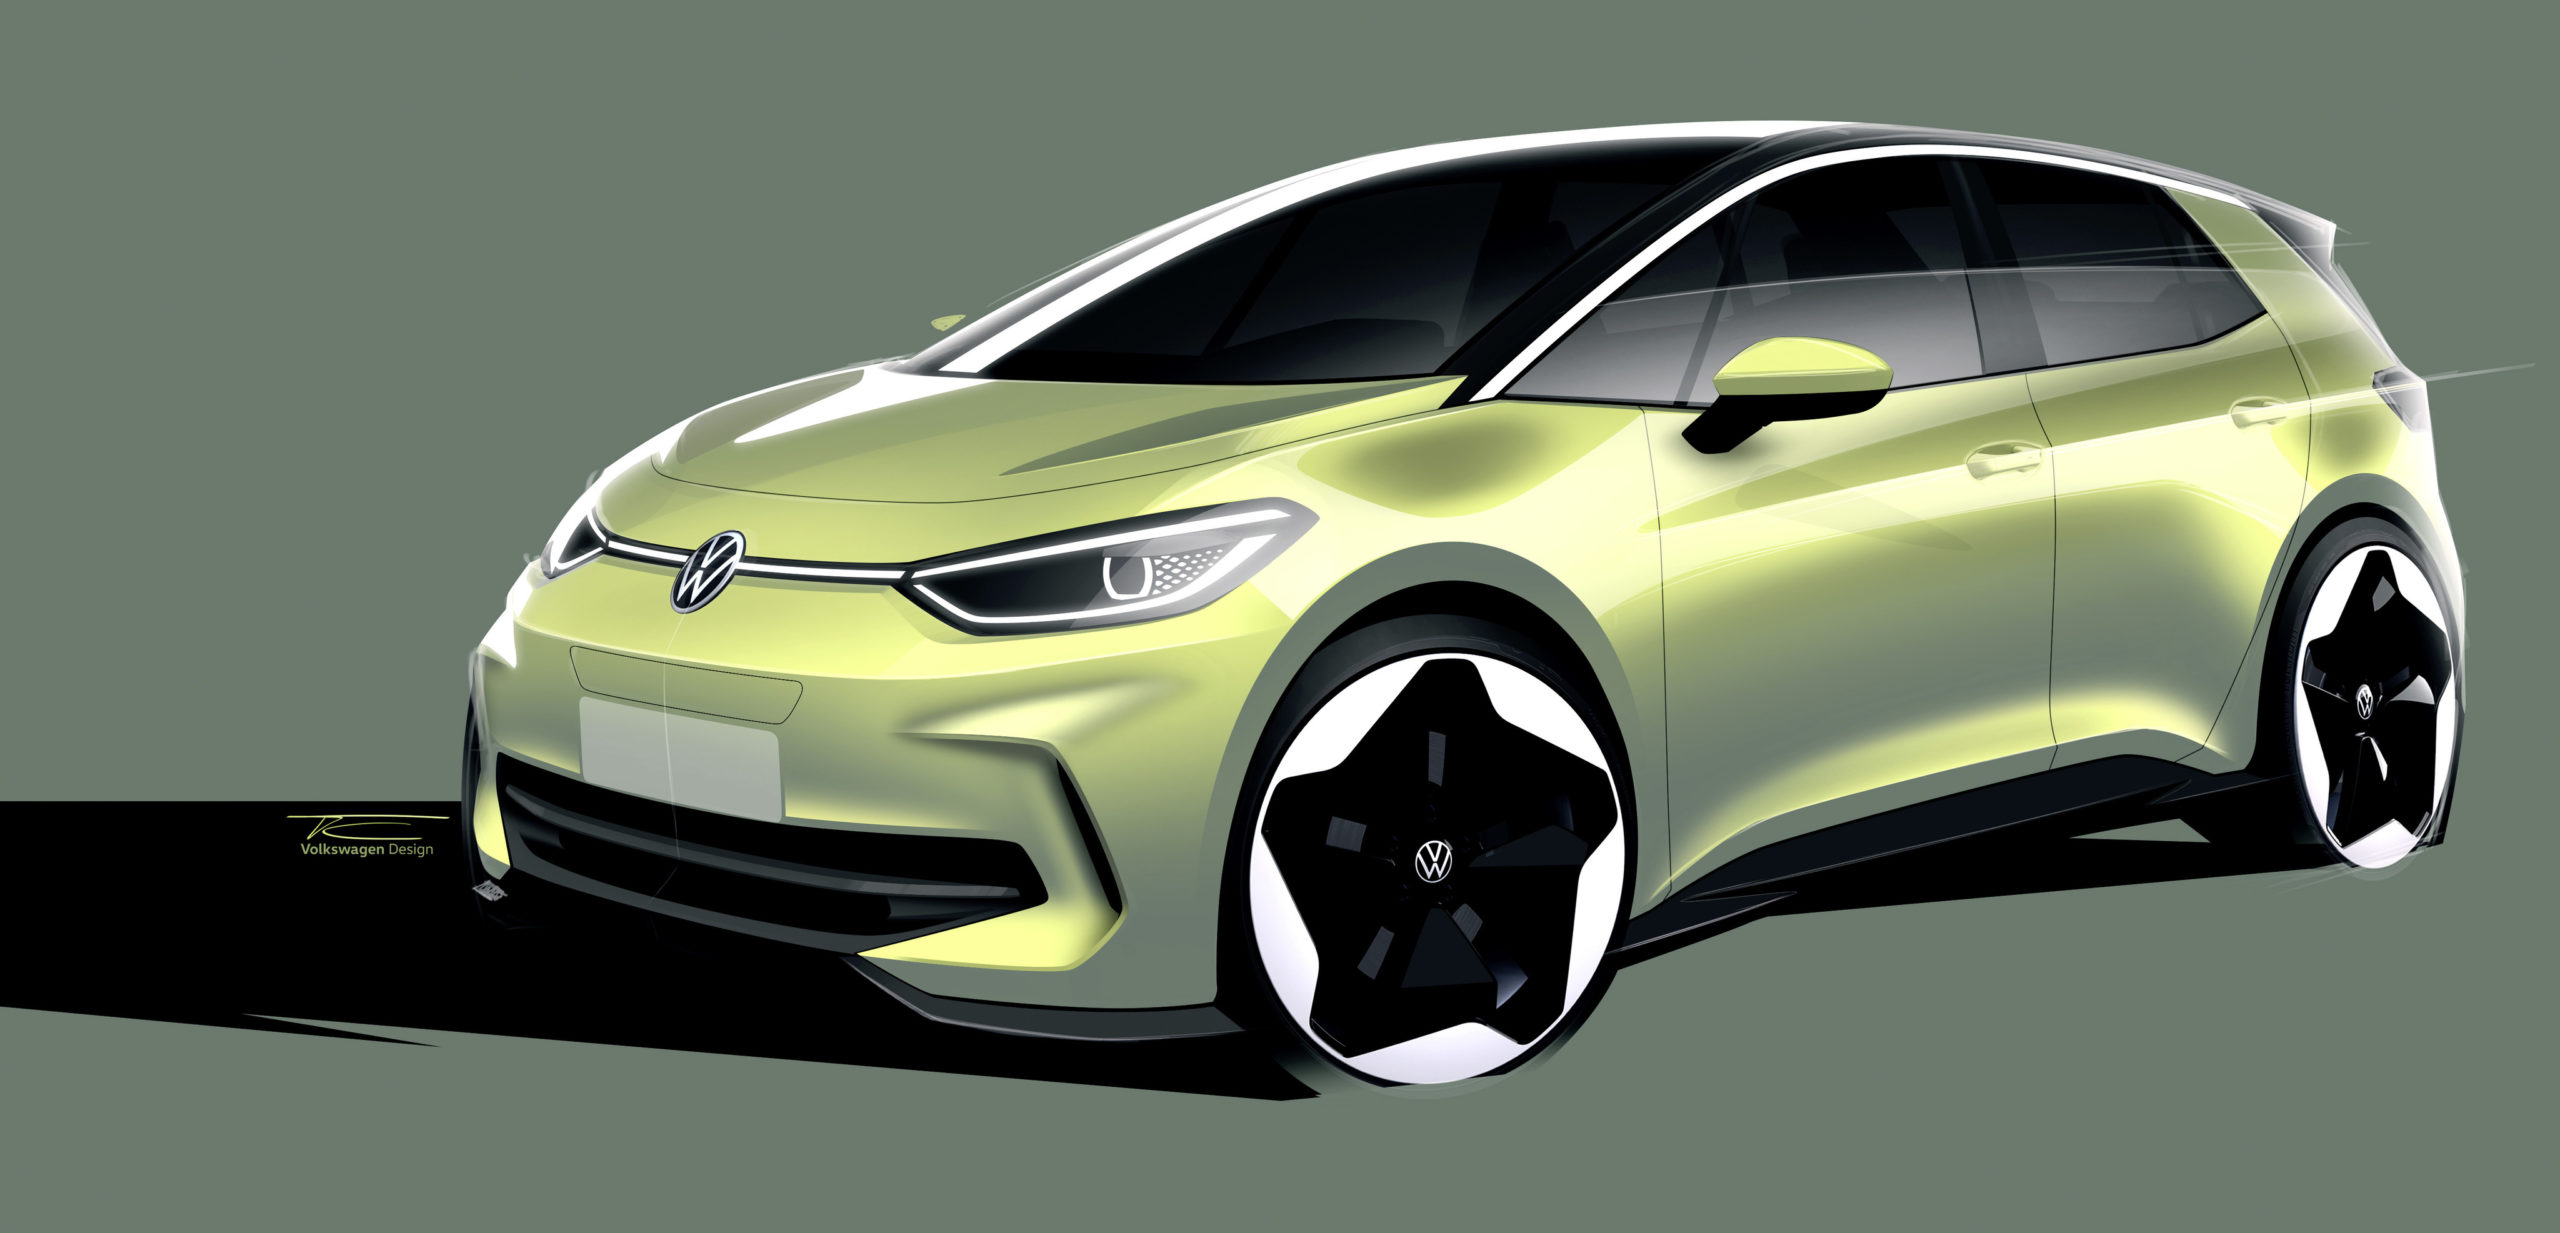 Design sketch of the 2023 Volkswagen ID. 3